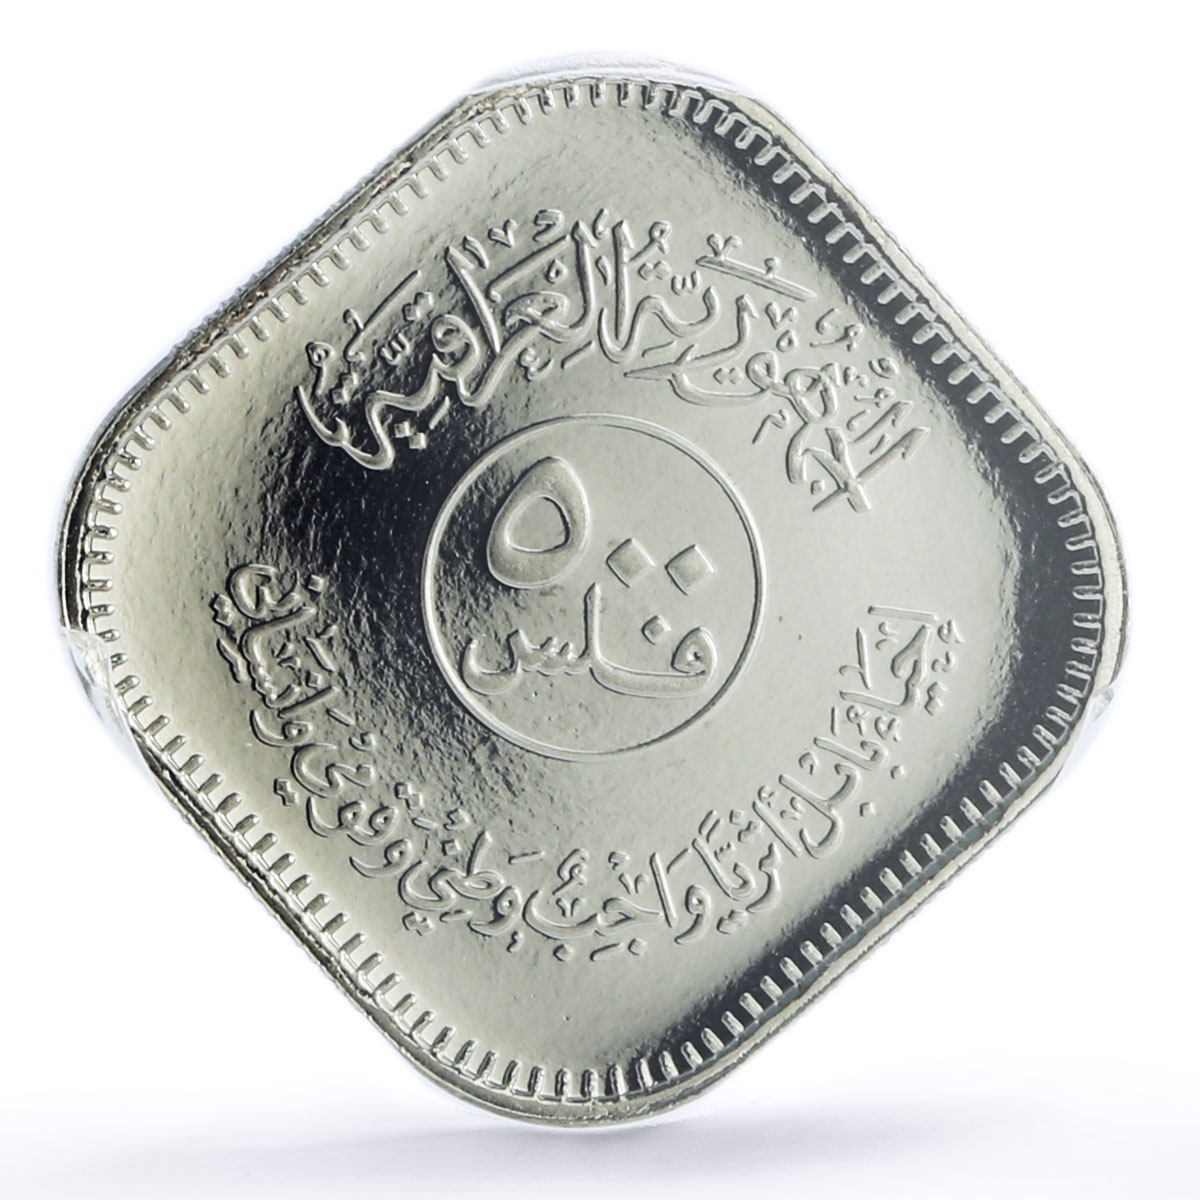 Iraq 500 fils Babylon Lion Sculpture KM168 PR68 PCGS nickel coin 1982